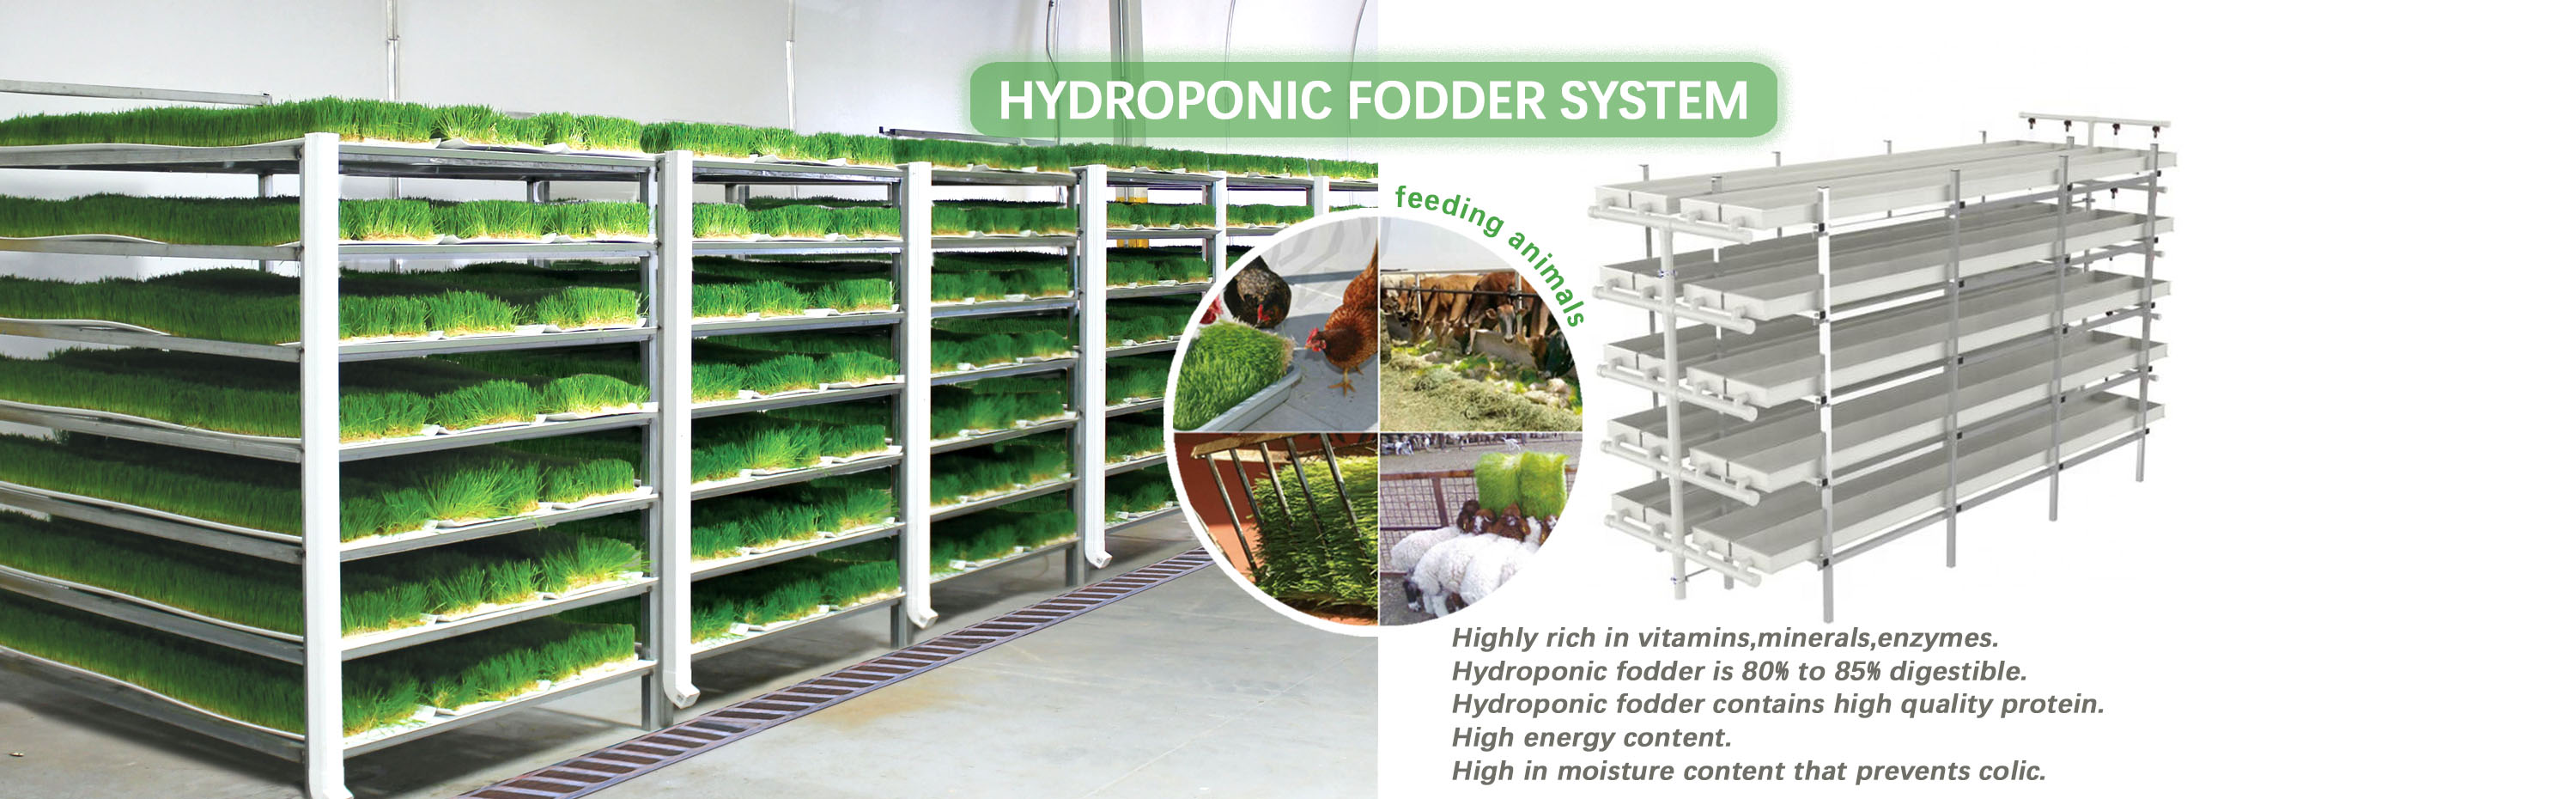 Hydroponic Fodder System